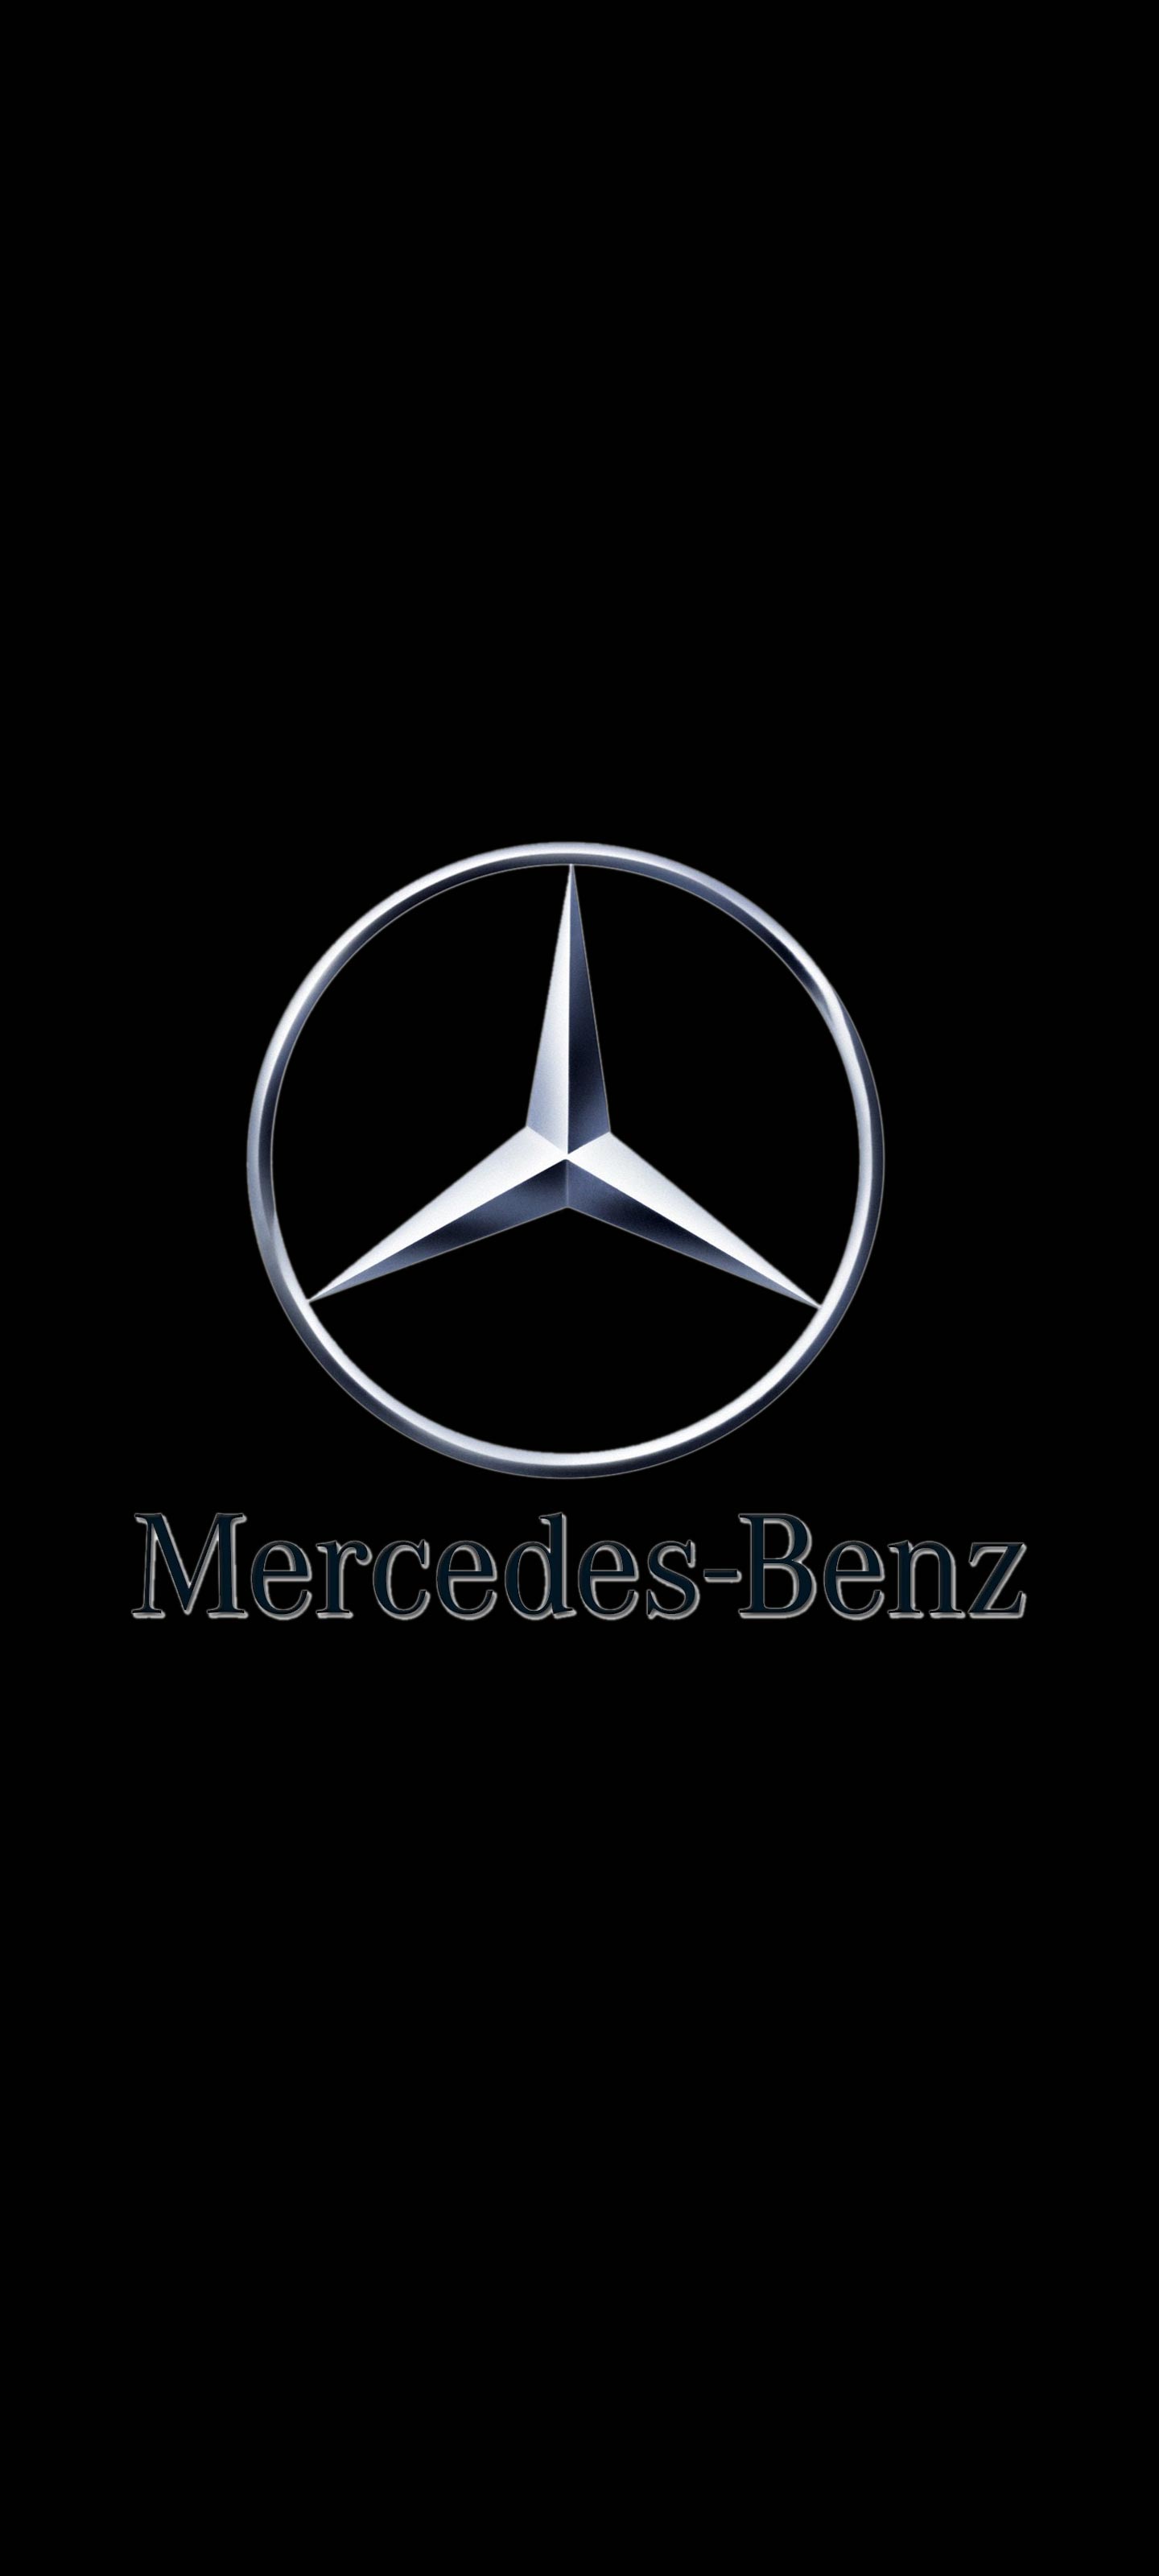 メルセデスベンツ Mercedesbenz ロゴ の無料待ち受け画像 スマホ壁紙 Iphone Android 1 待ち受けparadise